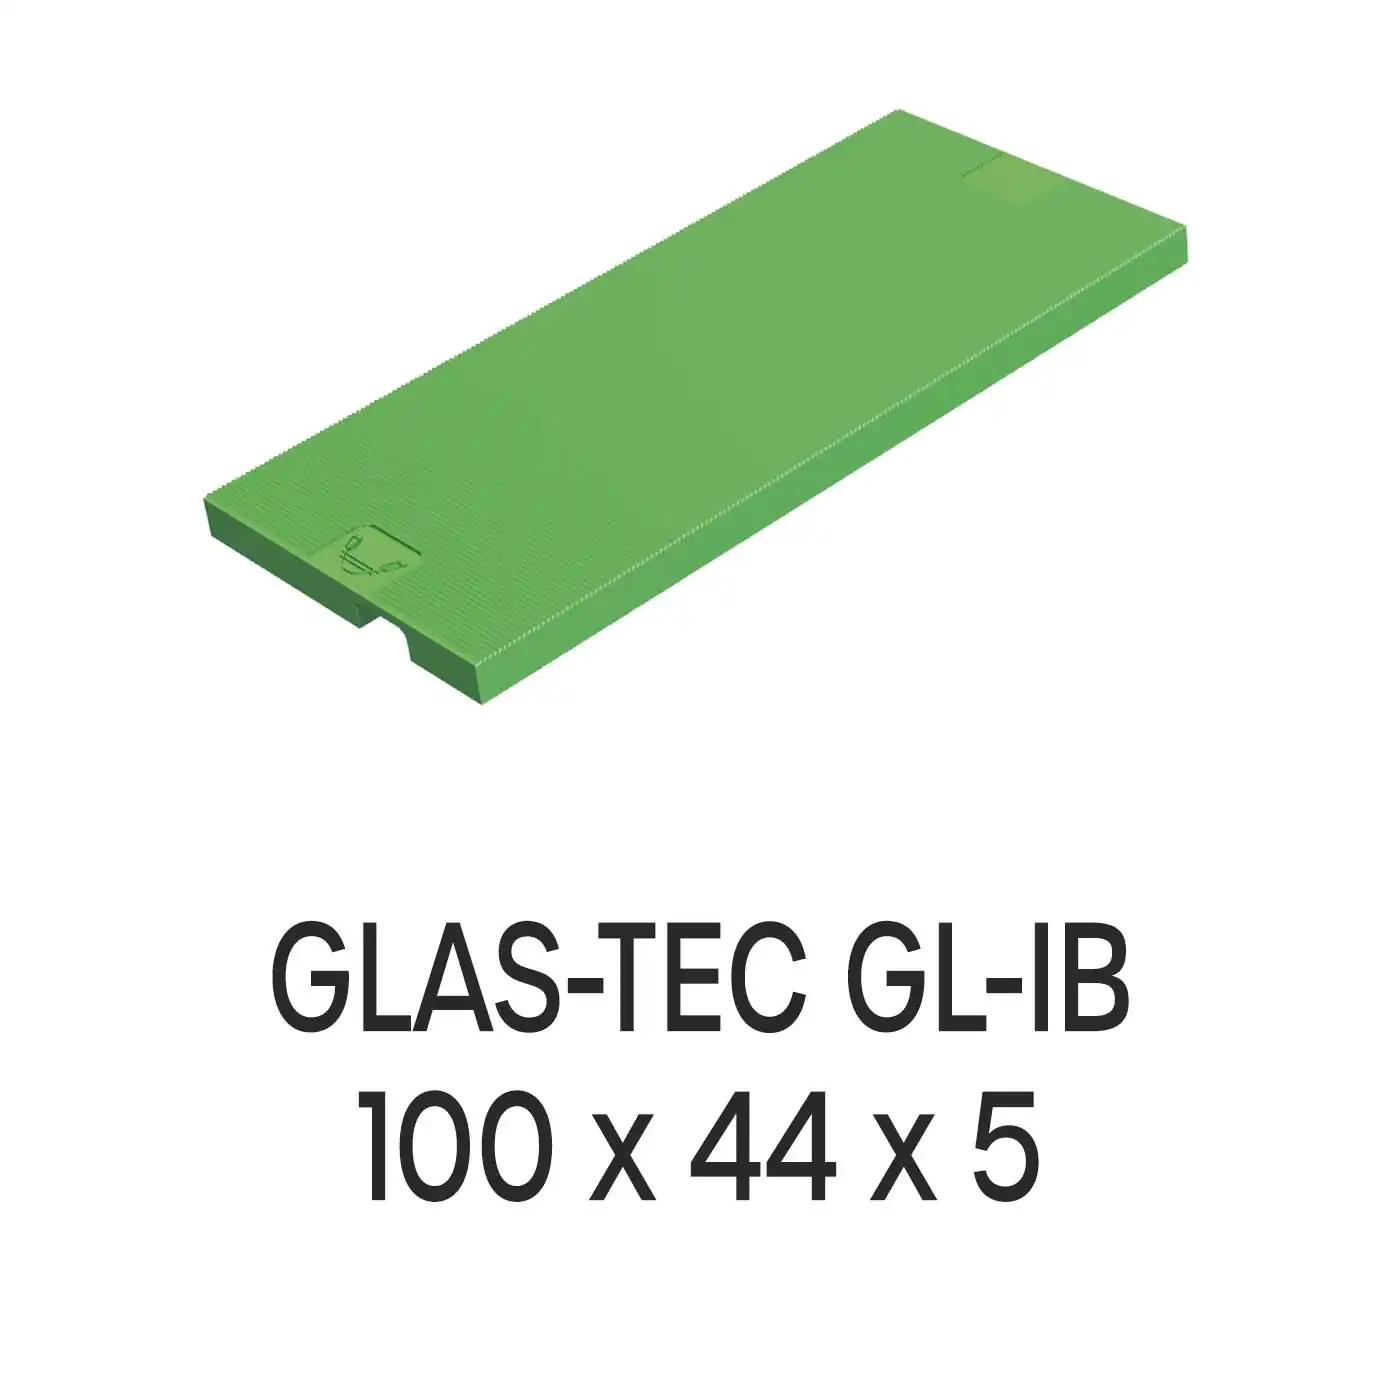 Roto Verglasungsklotz GLAS-TEC GL-IB, 100 x 44 x 5 mm, schwarz, 500 Stück